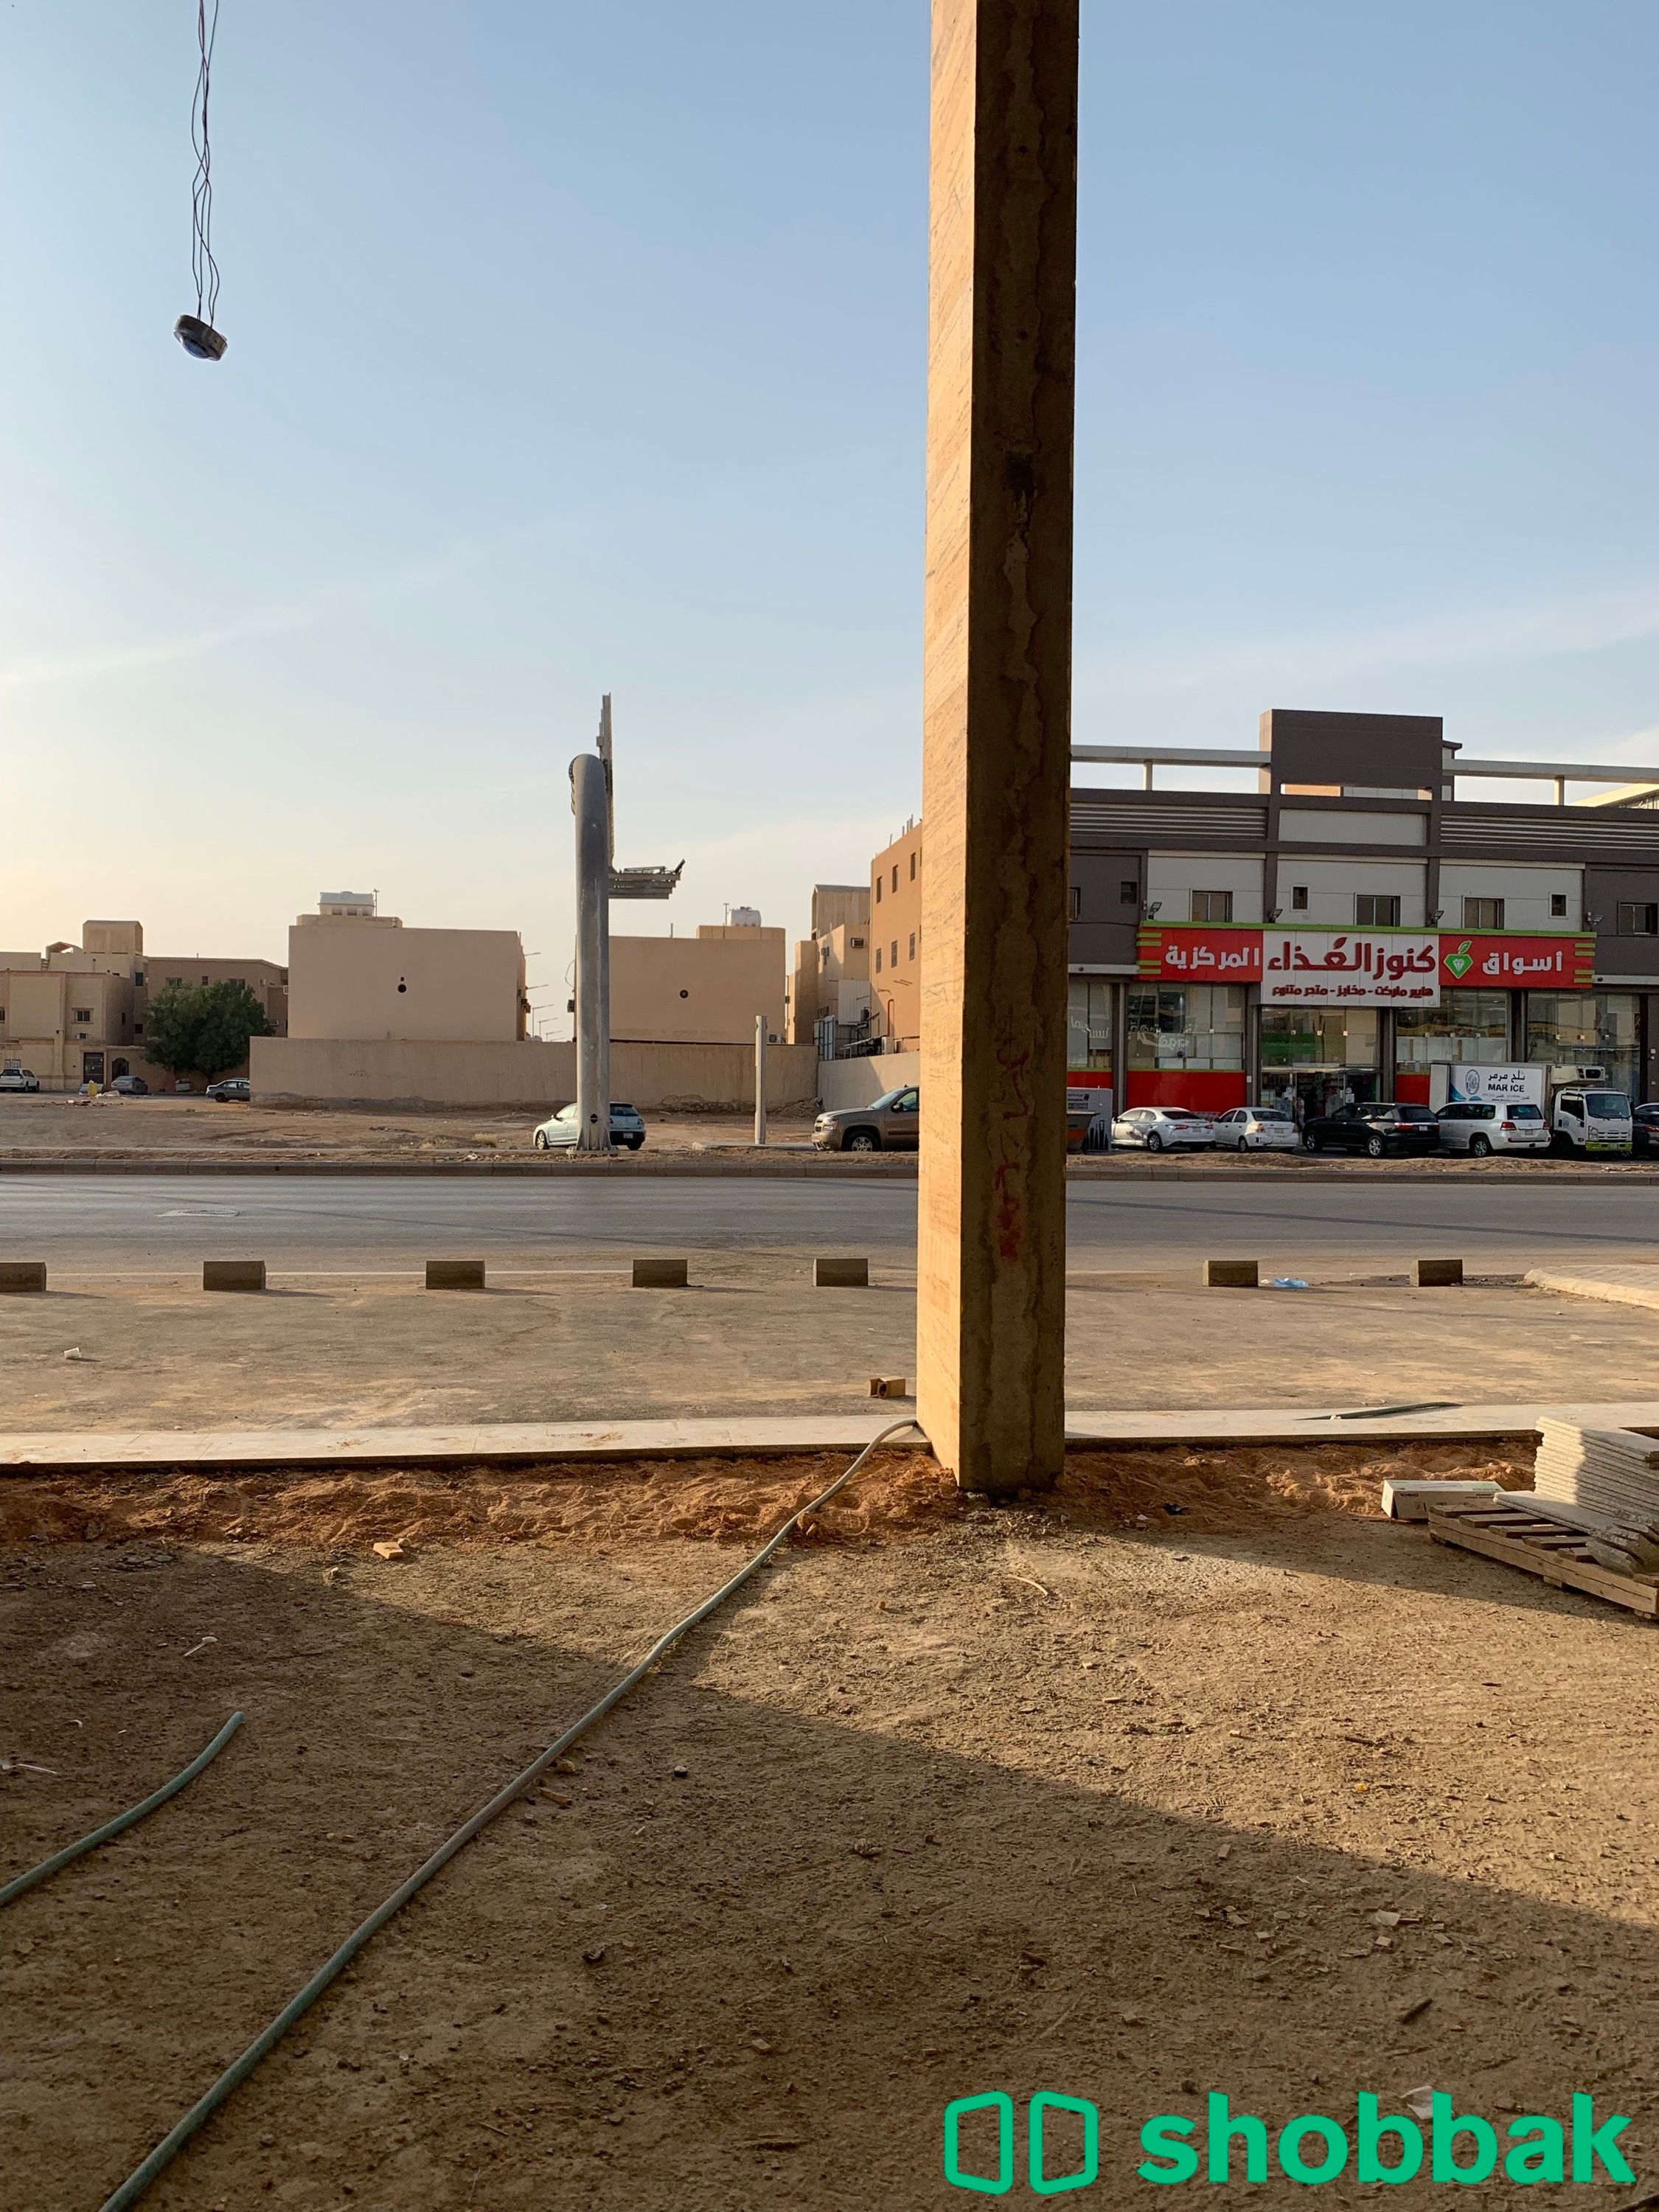 محلات للايجار | حي ظهرة لبن  Shobbak Saudi Arabia